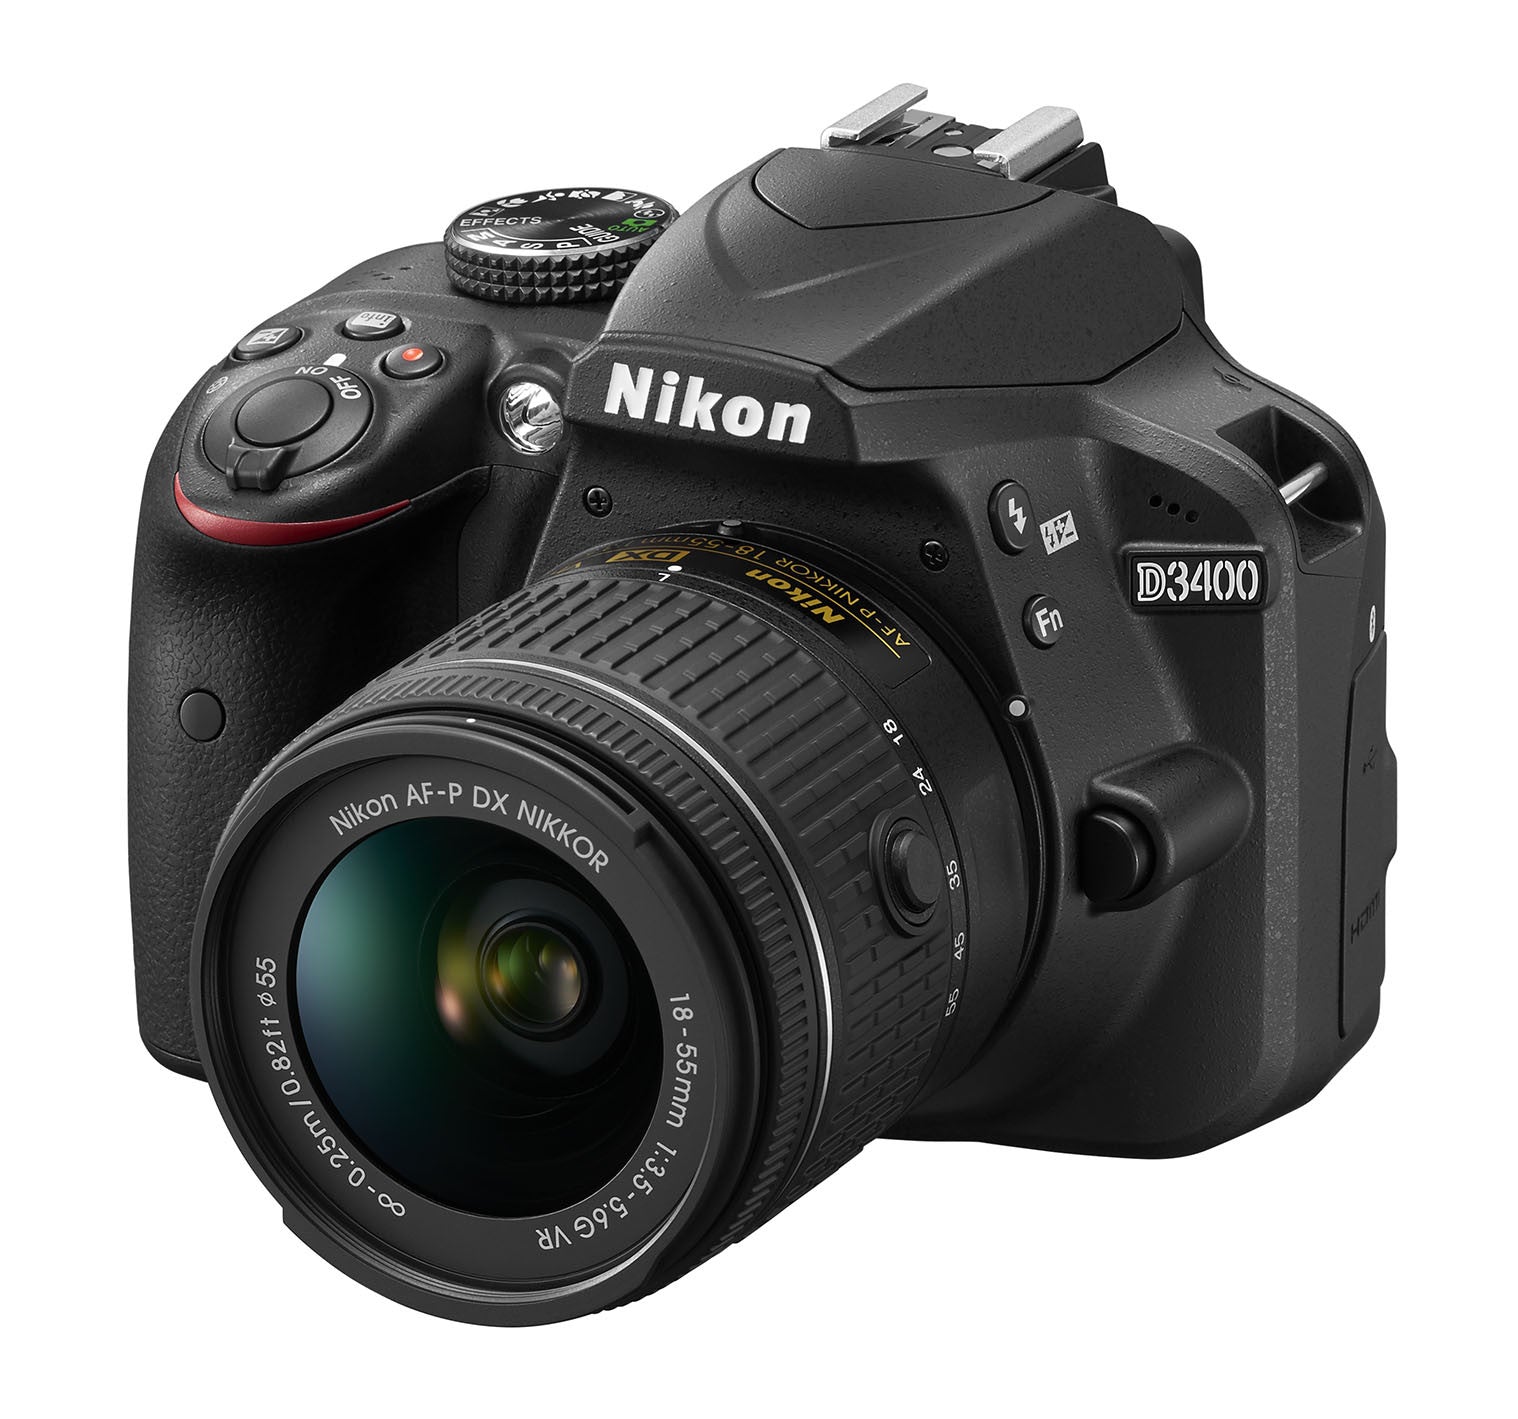 Nikon D3400 DX-format Digital SLR Kit w/ 18-55mm DX G VR Zoom Lens Black, camera dslr cameras, Nikon - Pictureline  - 4